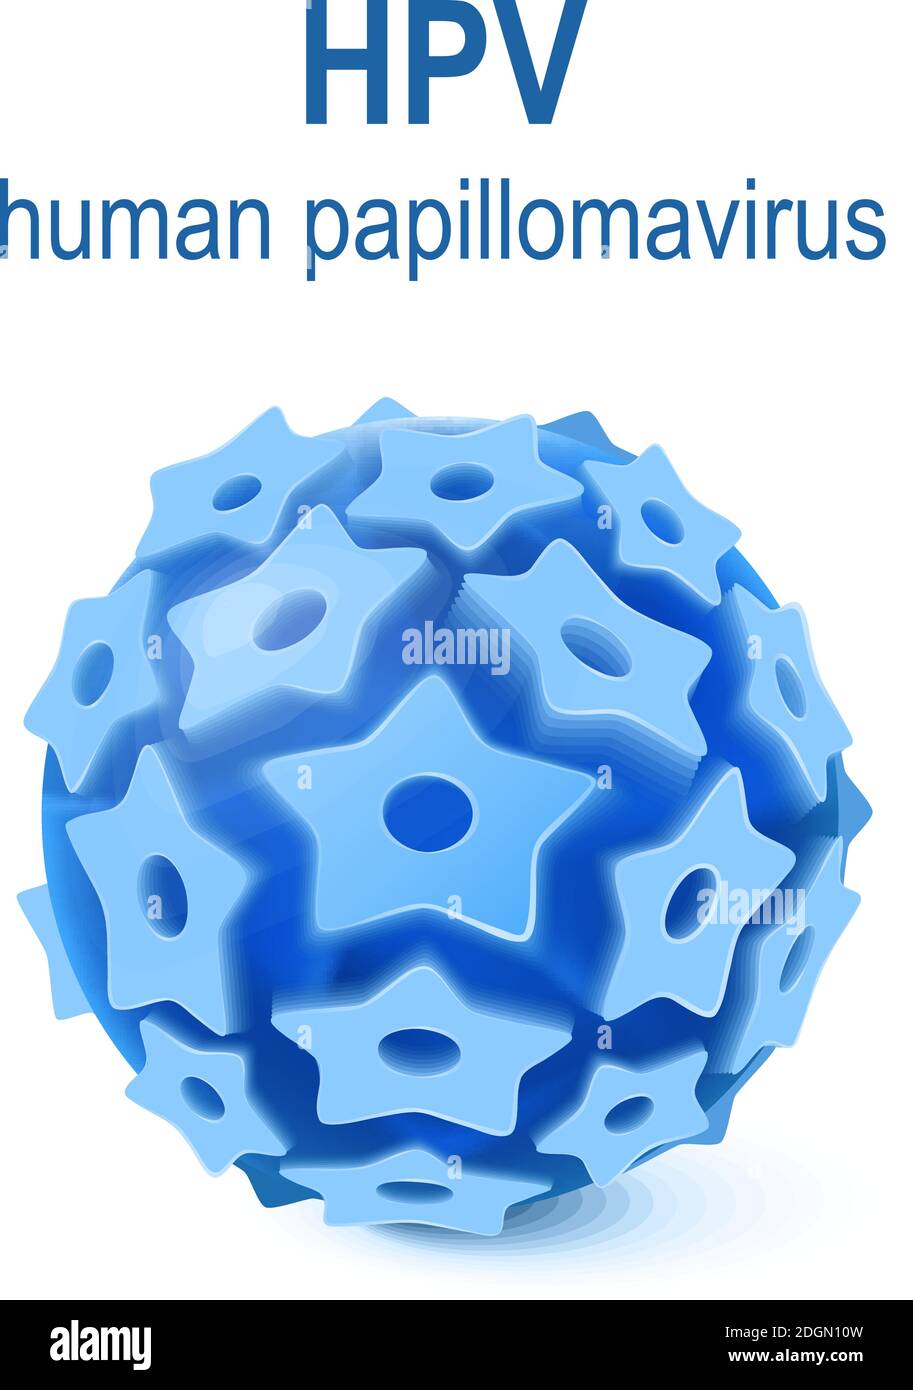 hpv - menschliche Papillomavirus-Infektion. HPV ist ein Virus, das Warzen und Gebärmutterhalskrebs verursacht Stock Vektor